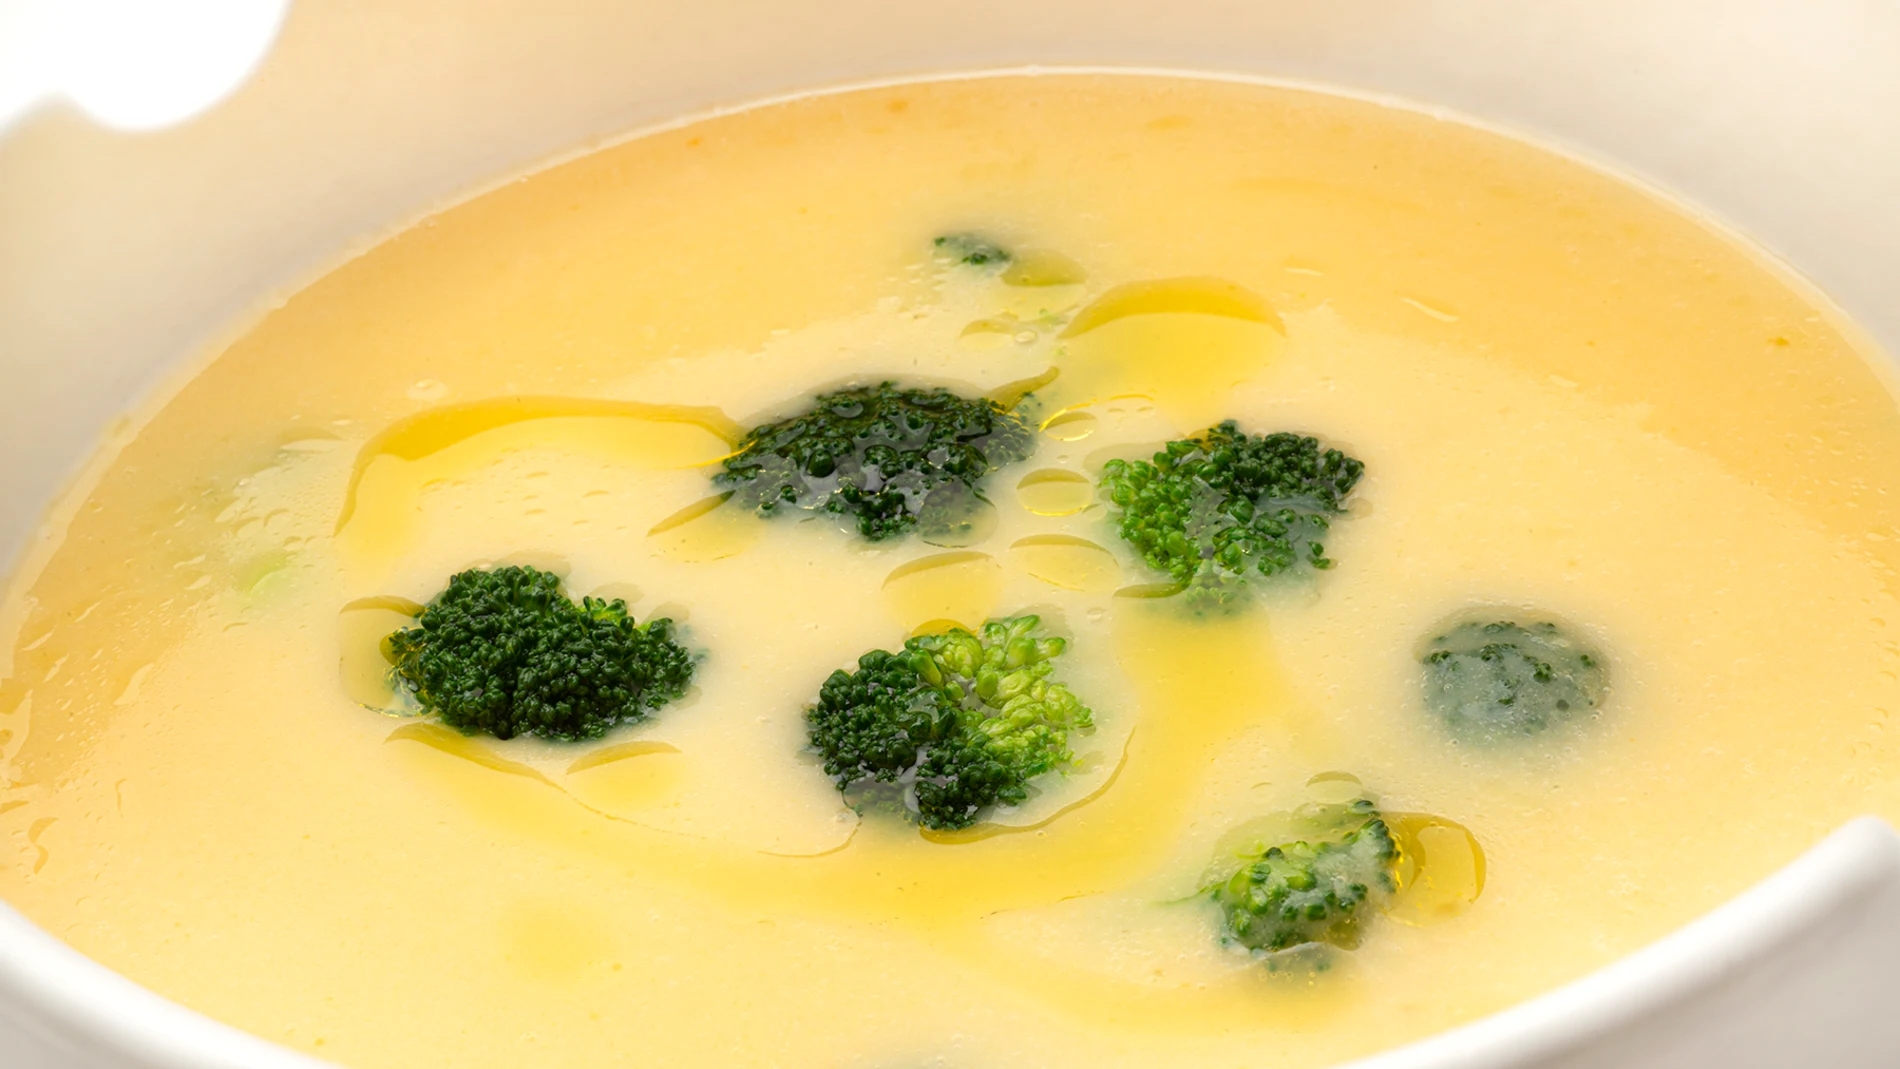 Receta de crema de patata con brócoli, de Karlos Arguiñano: "Reconforta el cuerpo y el alma"